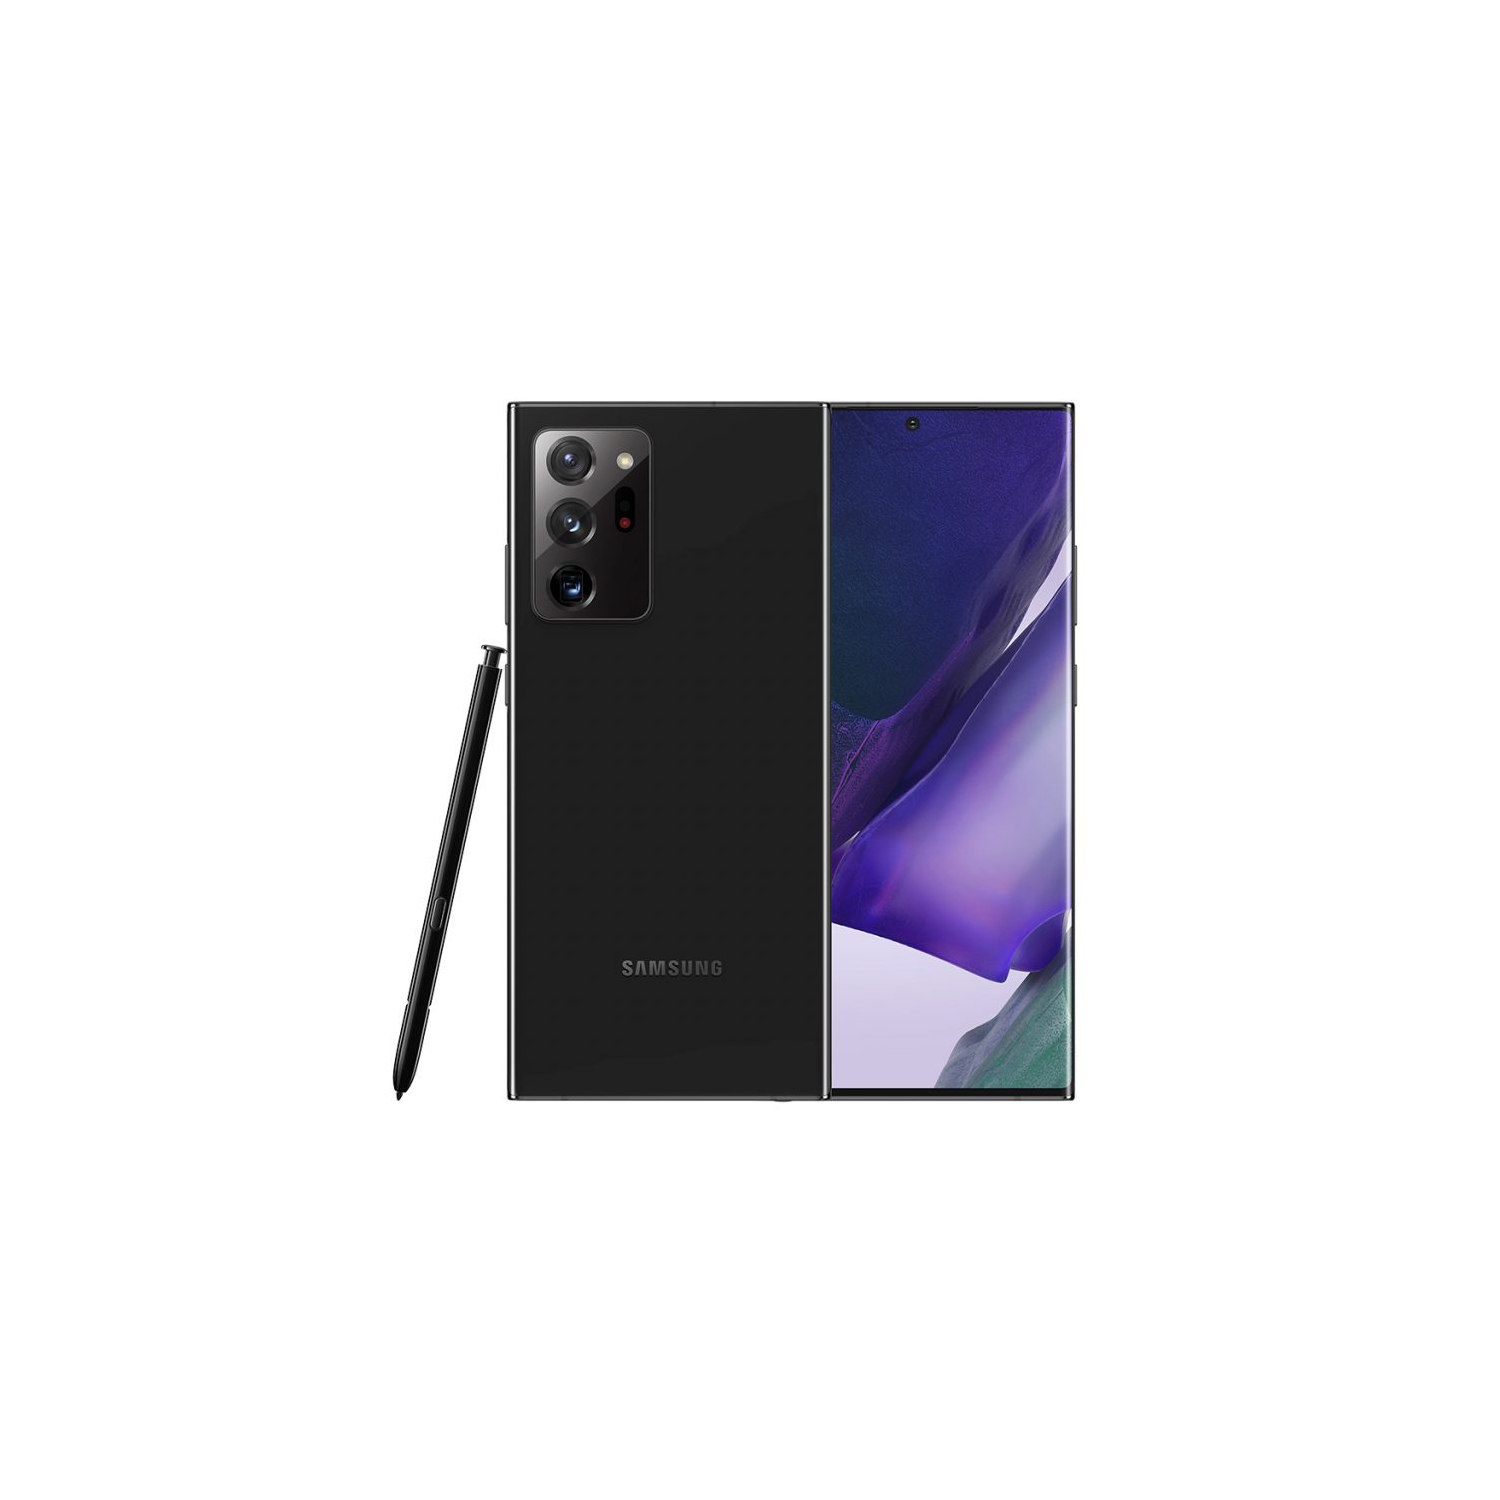 Samsung Galaxy Note 20 Ultra 5G| SM-N986U1| 128GB, Single Sim - Brand New - Mystic Black